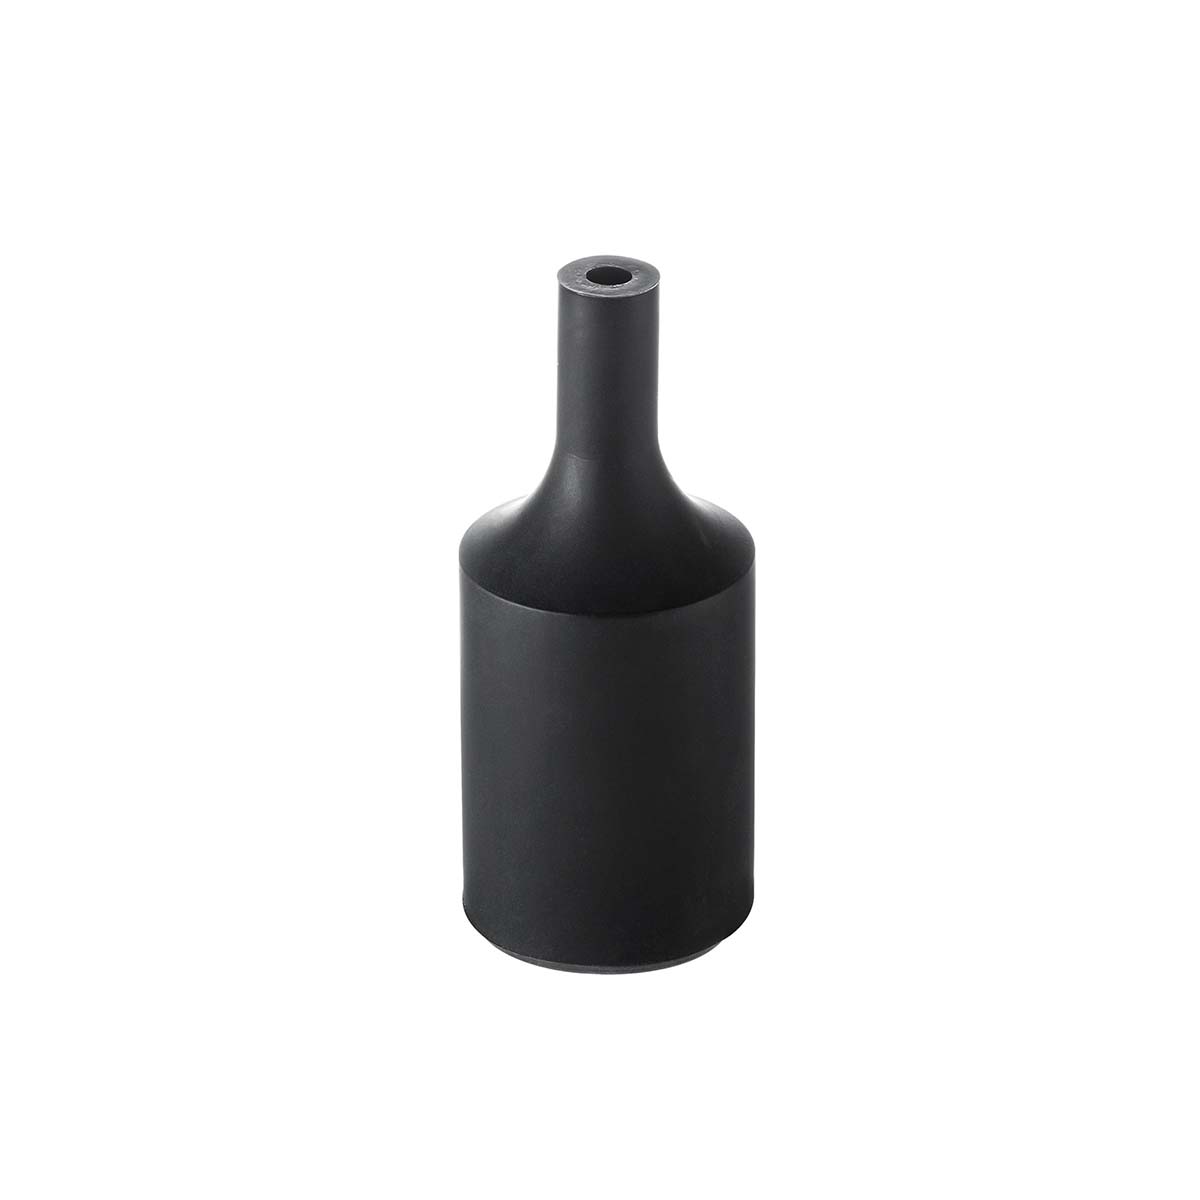 Tangla lighting - TLLH024BK - lamp holder silicon - E27 - bottle - black